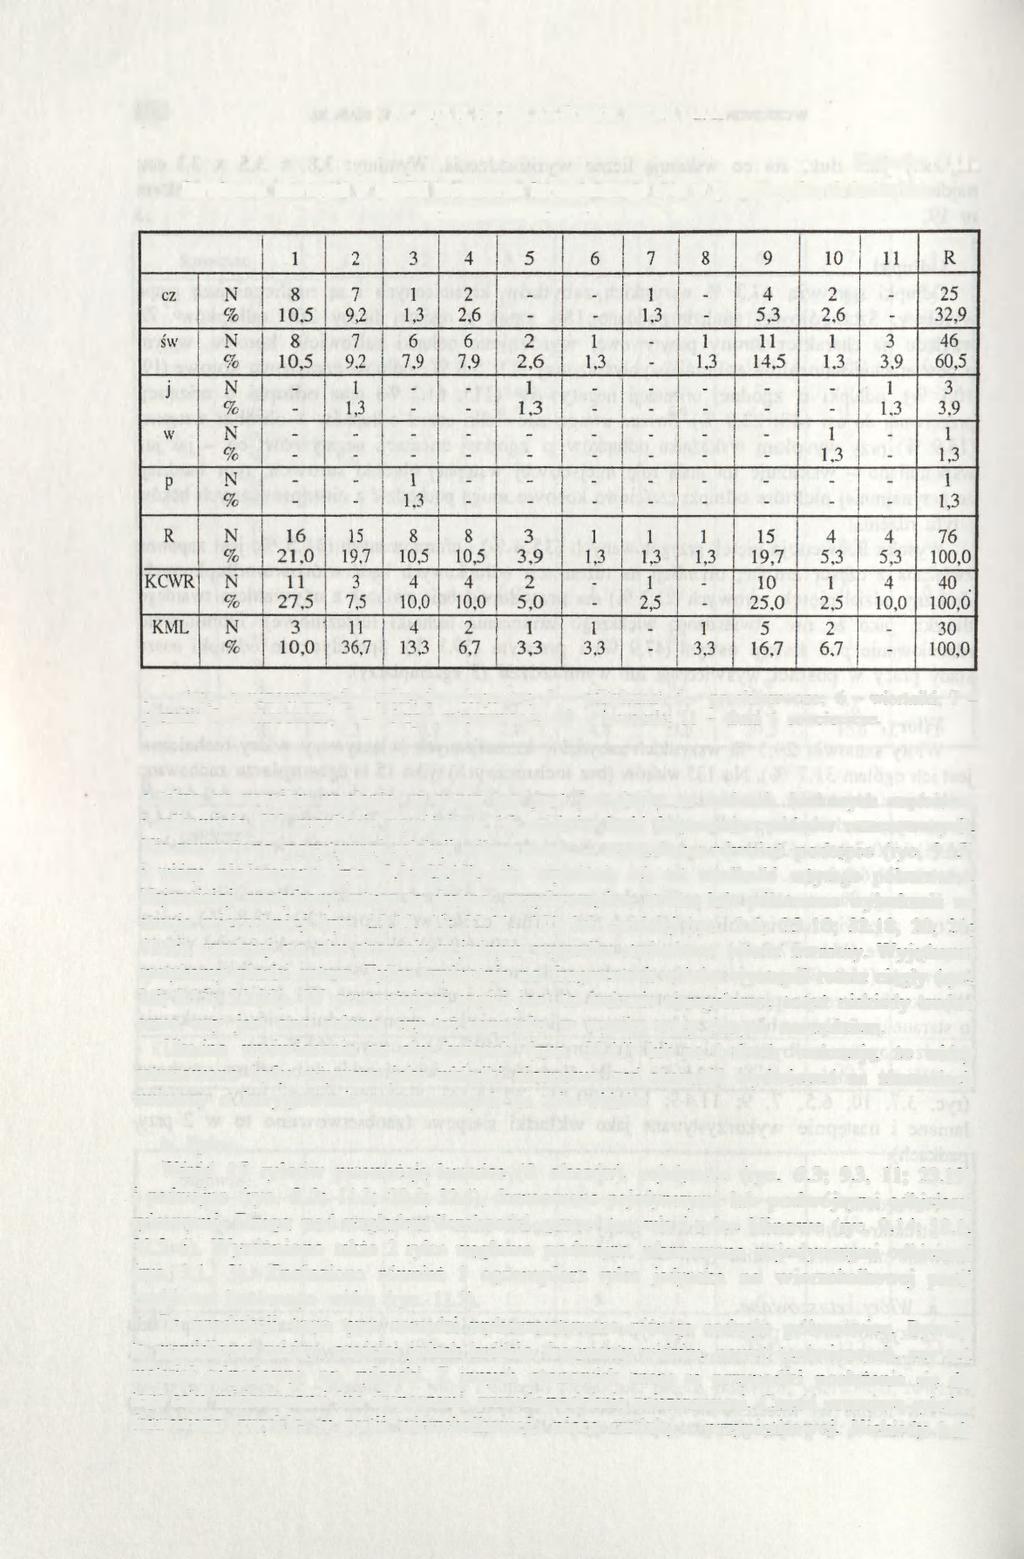 104 JOLANTA M. MICHALAK-ŚCIBIOR, HALINA TARAS Tabela Struktura narzędzi w całości inwentarza krzemiennego oraz w poszczególnych kulturach wczesnoneolitycznych ze stan. 20. VII.